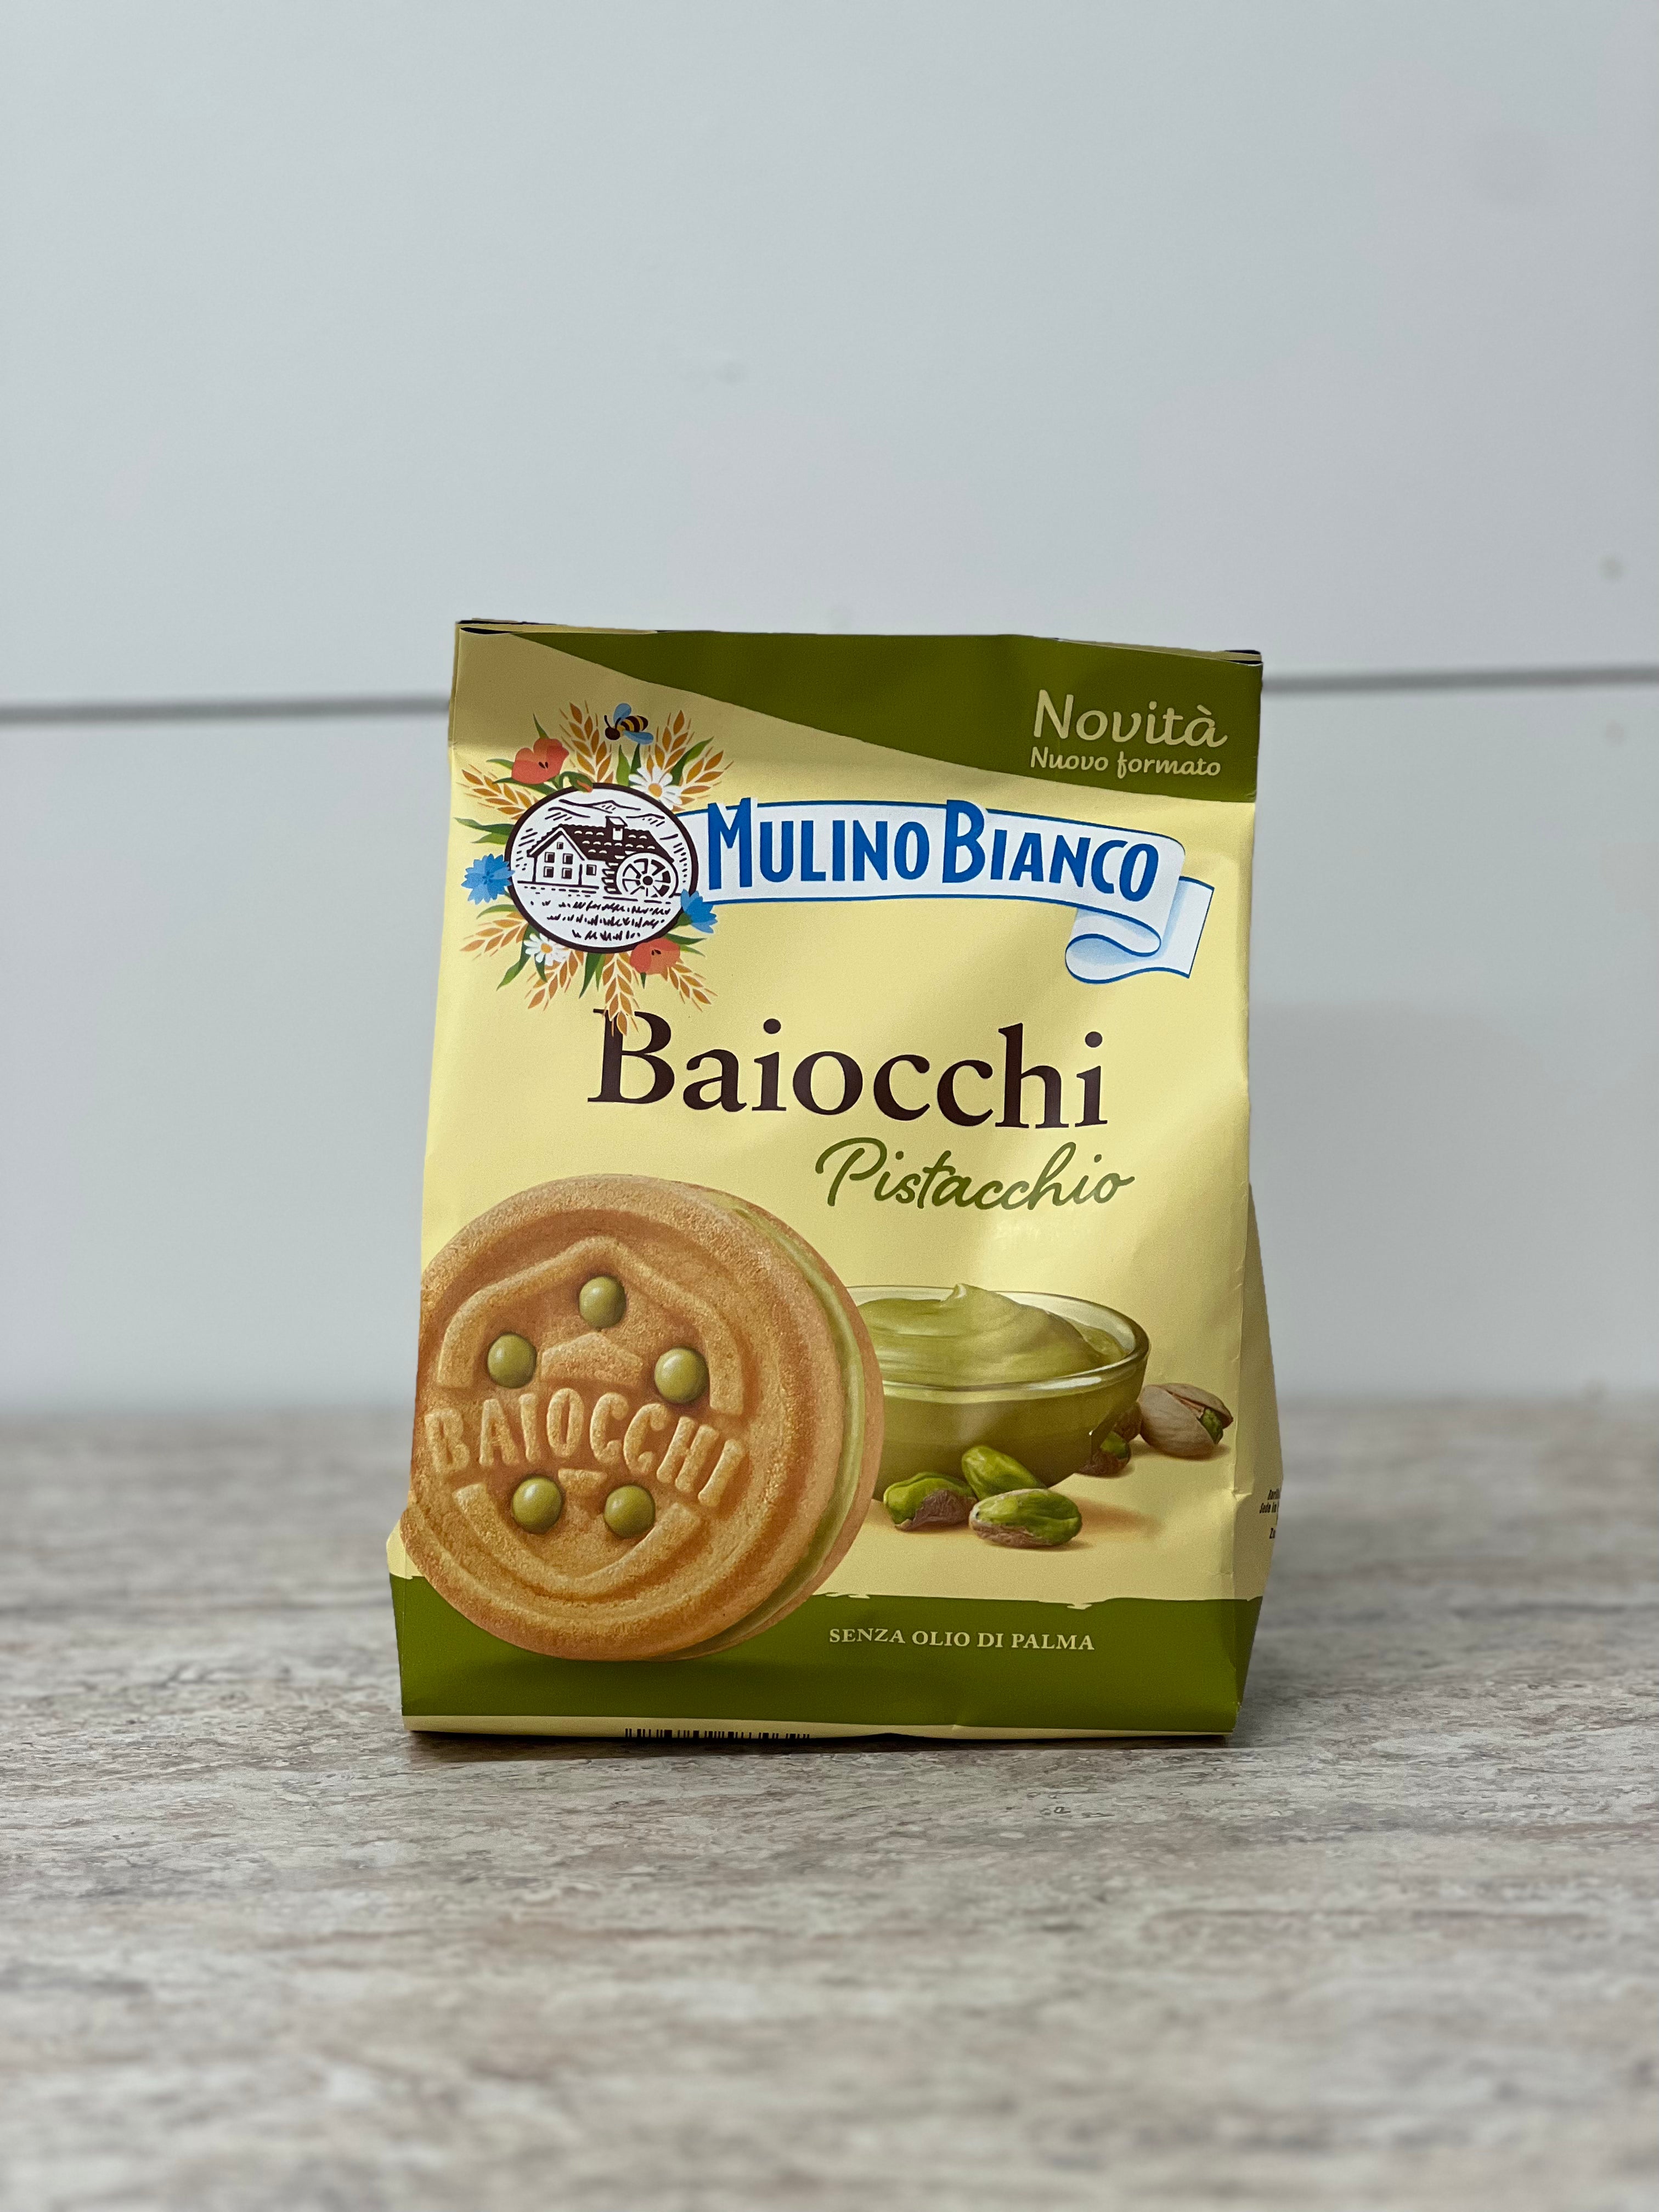 Wholesale Mulino Bianco Baiocchi Cookies